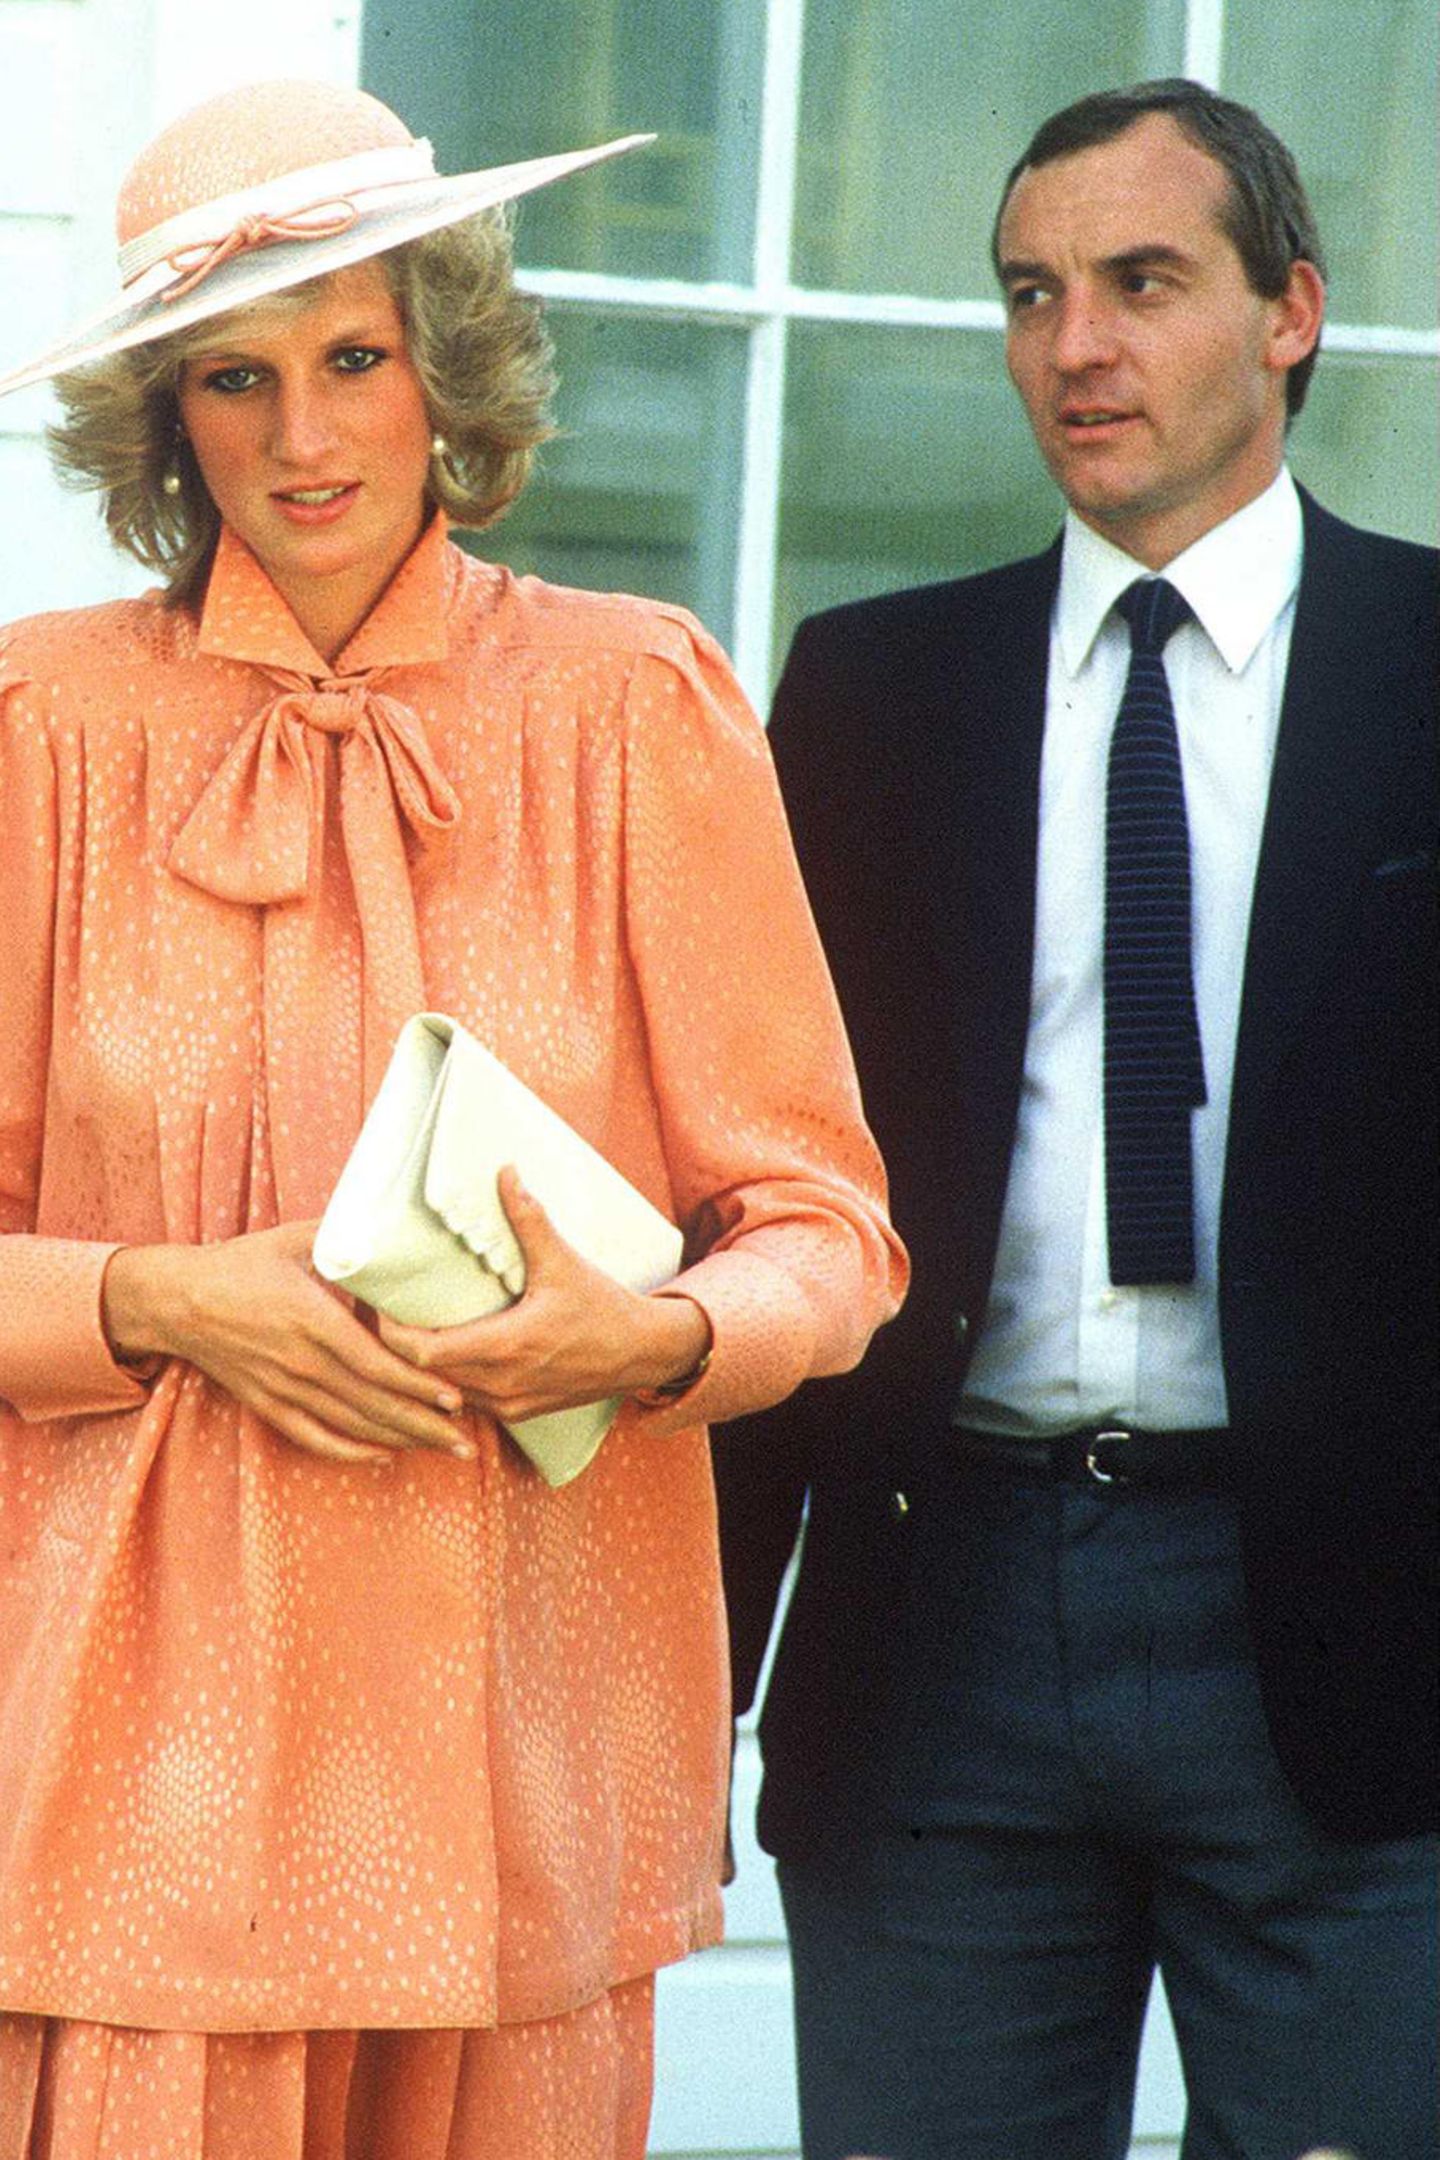 Barry Mannakee: Der verheiratete Polizist wurde 1985 als Dianas Leibwächter abkommandiert und entwickelte sich bald zu ihrem Vertrauten und Trostspender. Die Prinzessin selbst gestand in den Sitzungen mit ihrem Sprachcoach Peter Settelen, sie habe davon geträumt, mit Mannakee zusammenzuleben: "Ich war nur glücklich, wenn er in meiner Nähe war." Wie weit die Beziehung ging, offenbarte sie jedoch nicht. Barry Mannakee wurde 1986 – angeblich weil Dianas Gefühle für ihn aufgeflogen waren – versetzt. Er starb drei Jahre später bei einem Verkehrsunfall. Prinzessin Diana stellte später die Theorie auf, ihr ehemaliger Leibwächter sei ihretwegen ermordet worden.